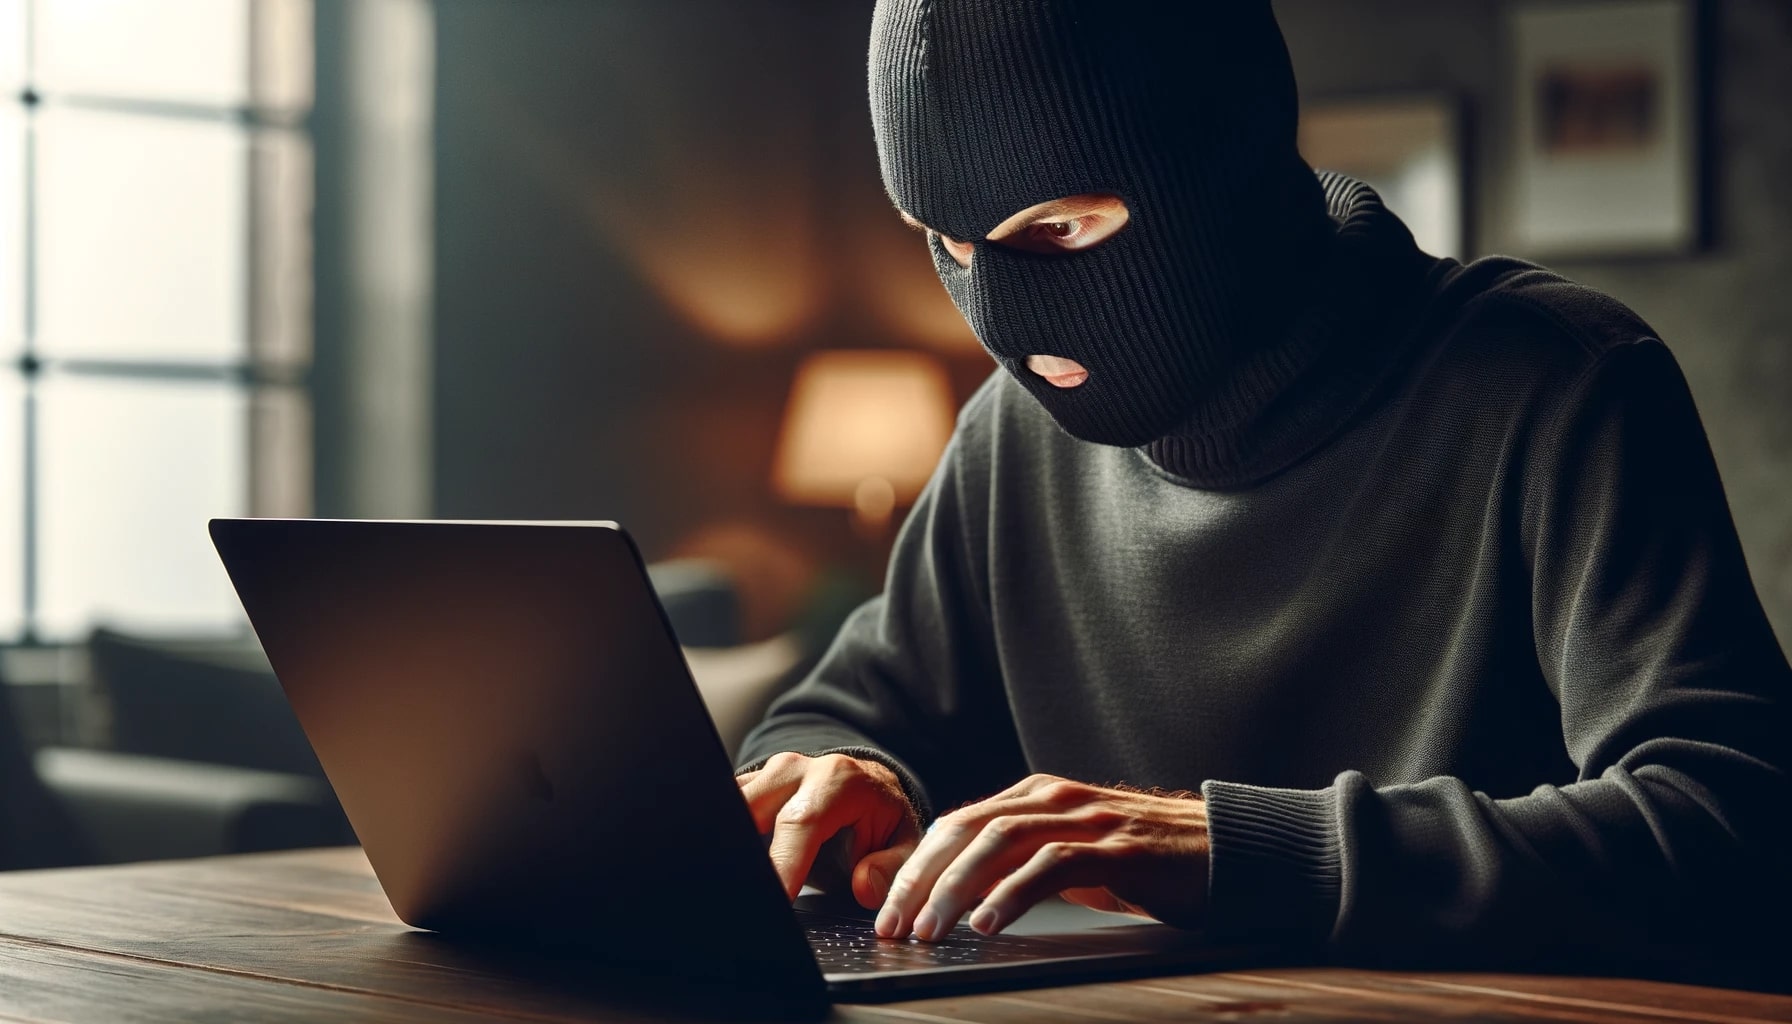 Immagine di un uomo anonimo con passamontagna che digita su un laptop senza marchio in una stanza buia, simbolo di privacy e sicurezza informatica